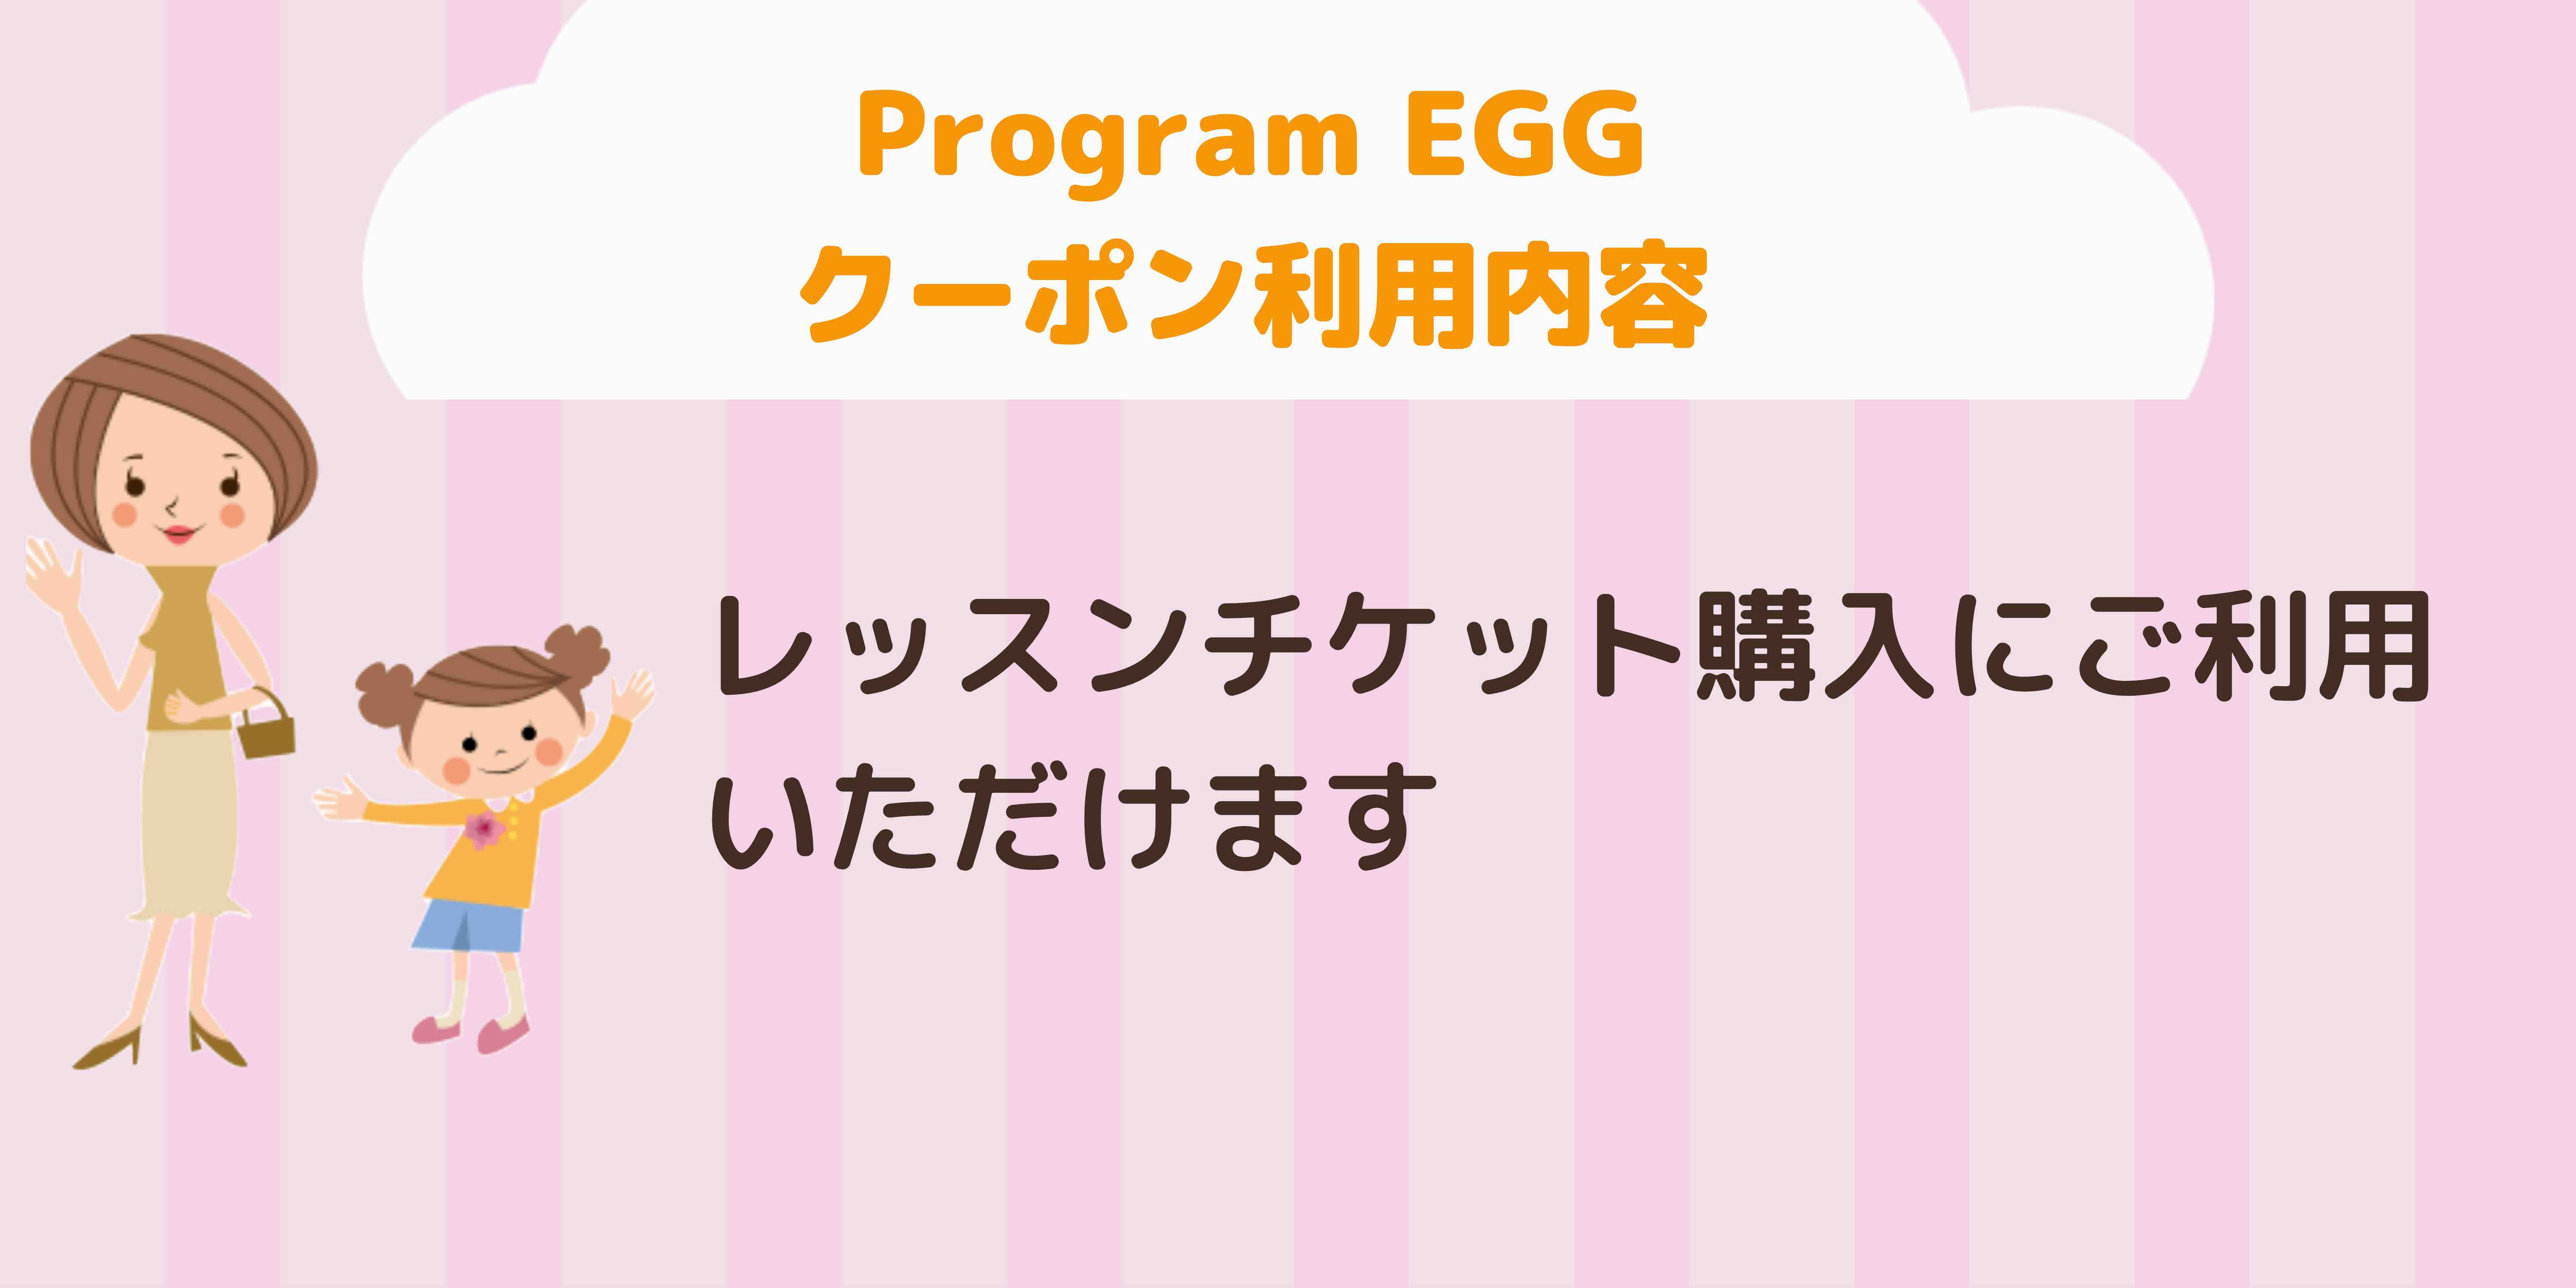 Program EGG